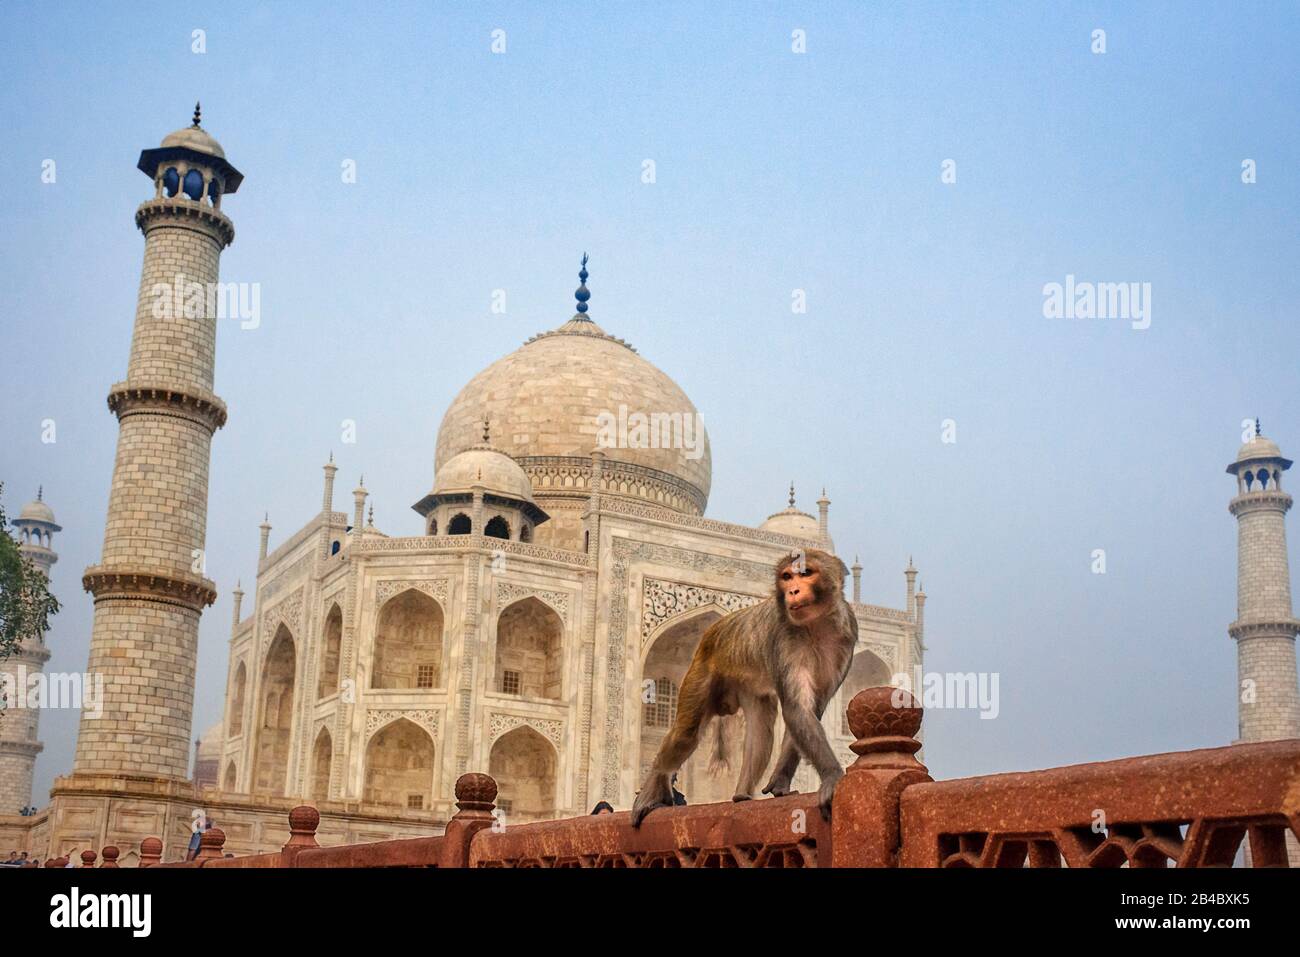 Taj Mahal con una scimmia, simbolo indiano - India viaggio sfondo. Agra, Uttar Pradesh, India. Questa è una delle escursioni del treno di lusso Maharaj Foto Stock